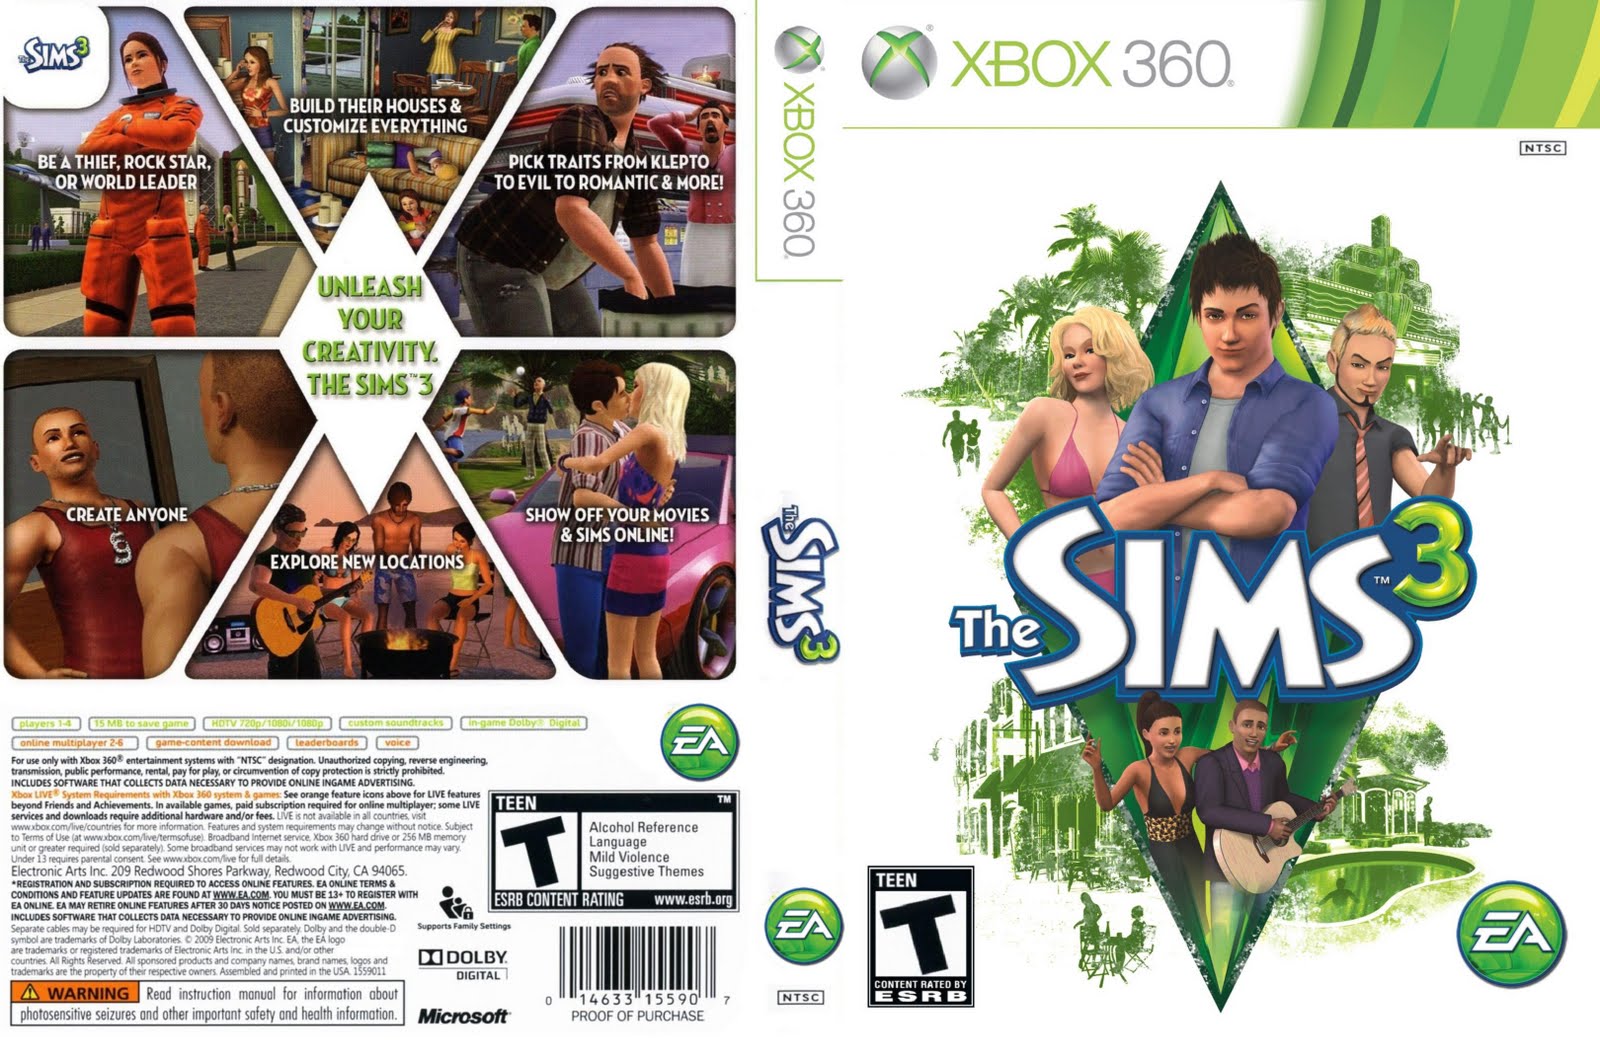 The Sims 4 - códigos secretos - dinheiro infinito e outros. 